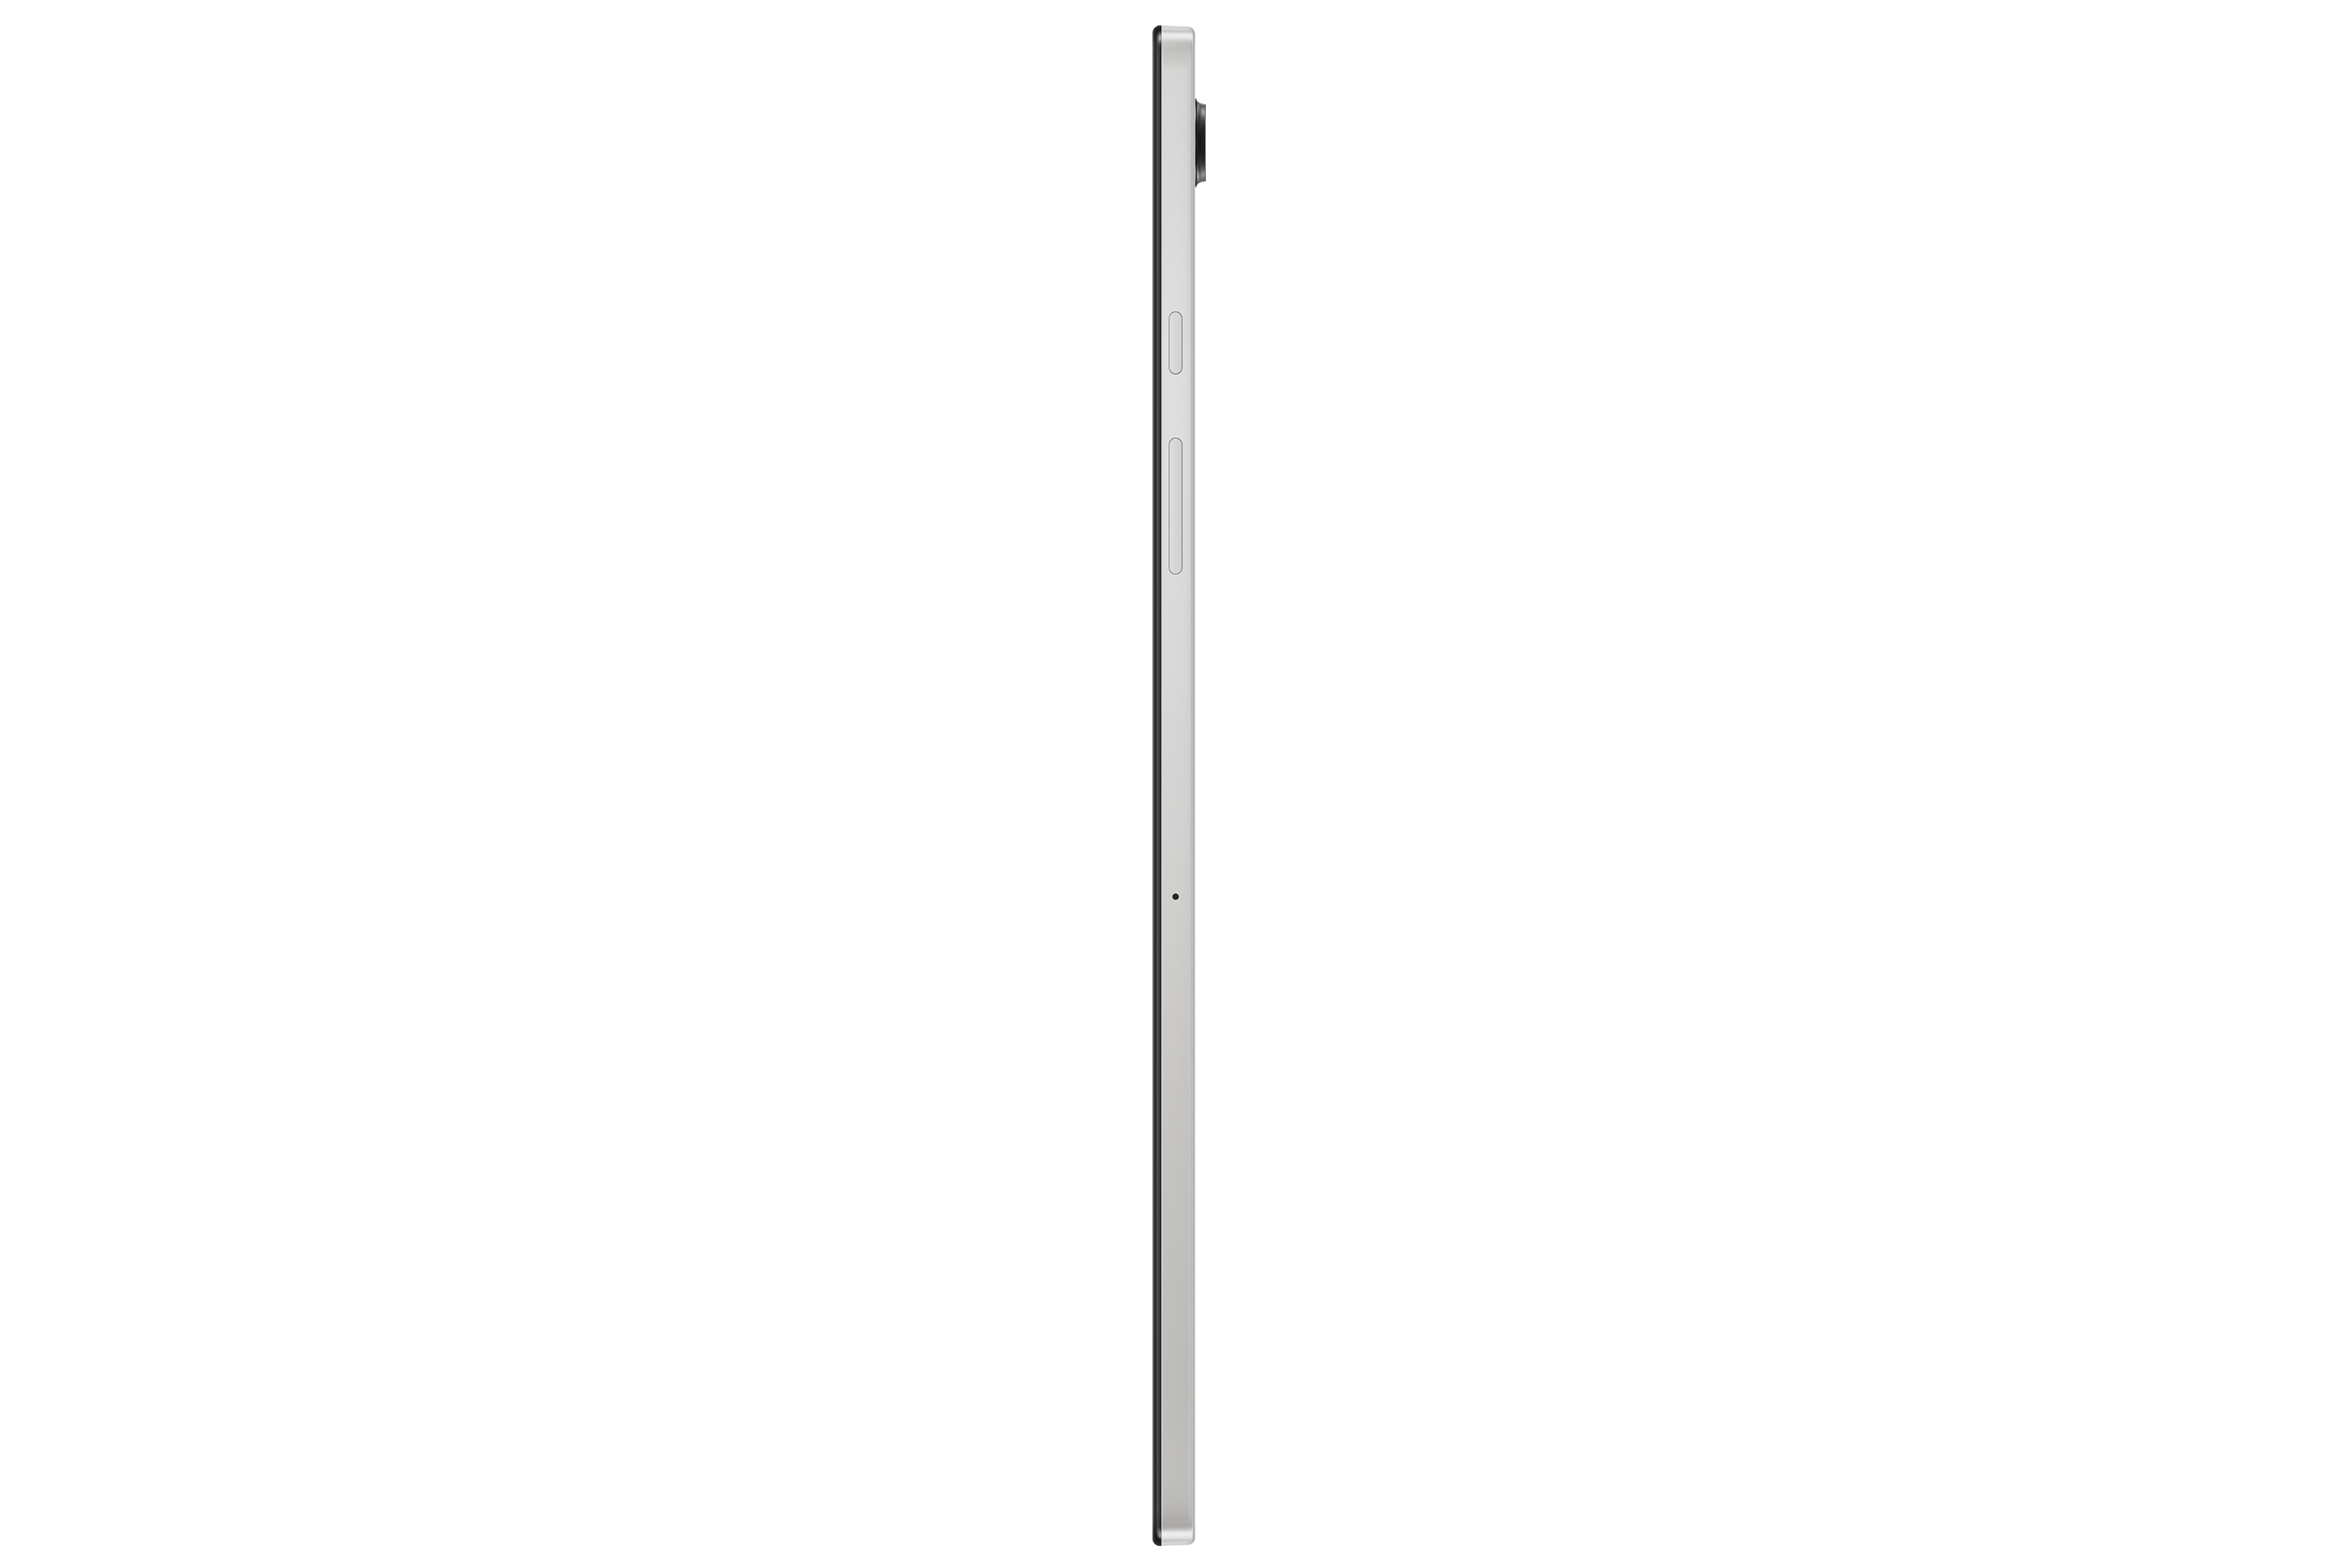 Samsung Galaxy Tab A 32 GB Silber - 10,5&quot; Tablet - A8 2 GHz 26,7cm-Display